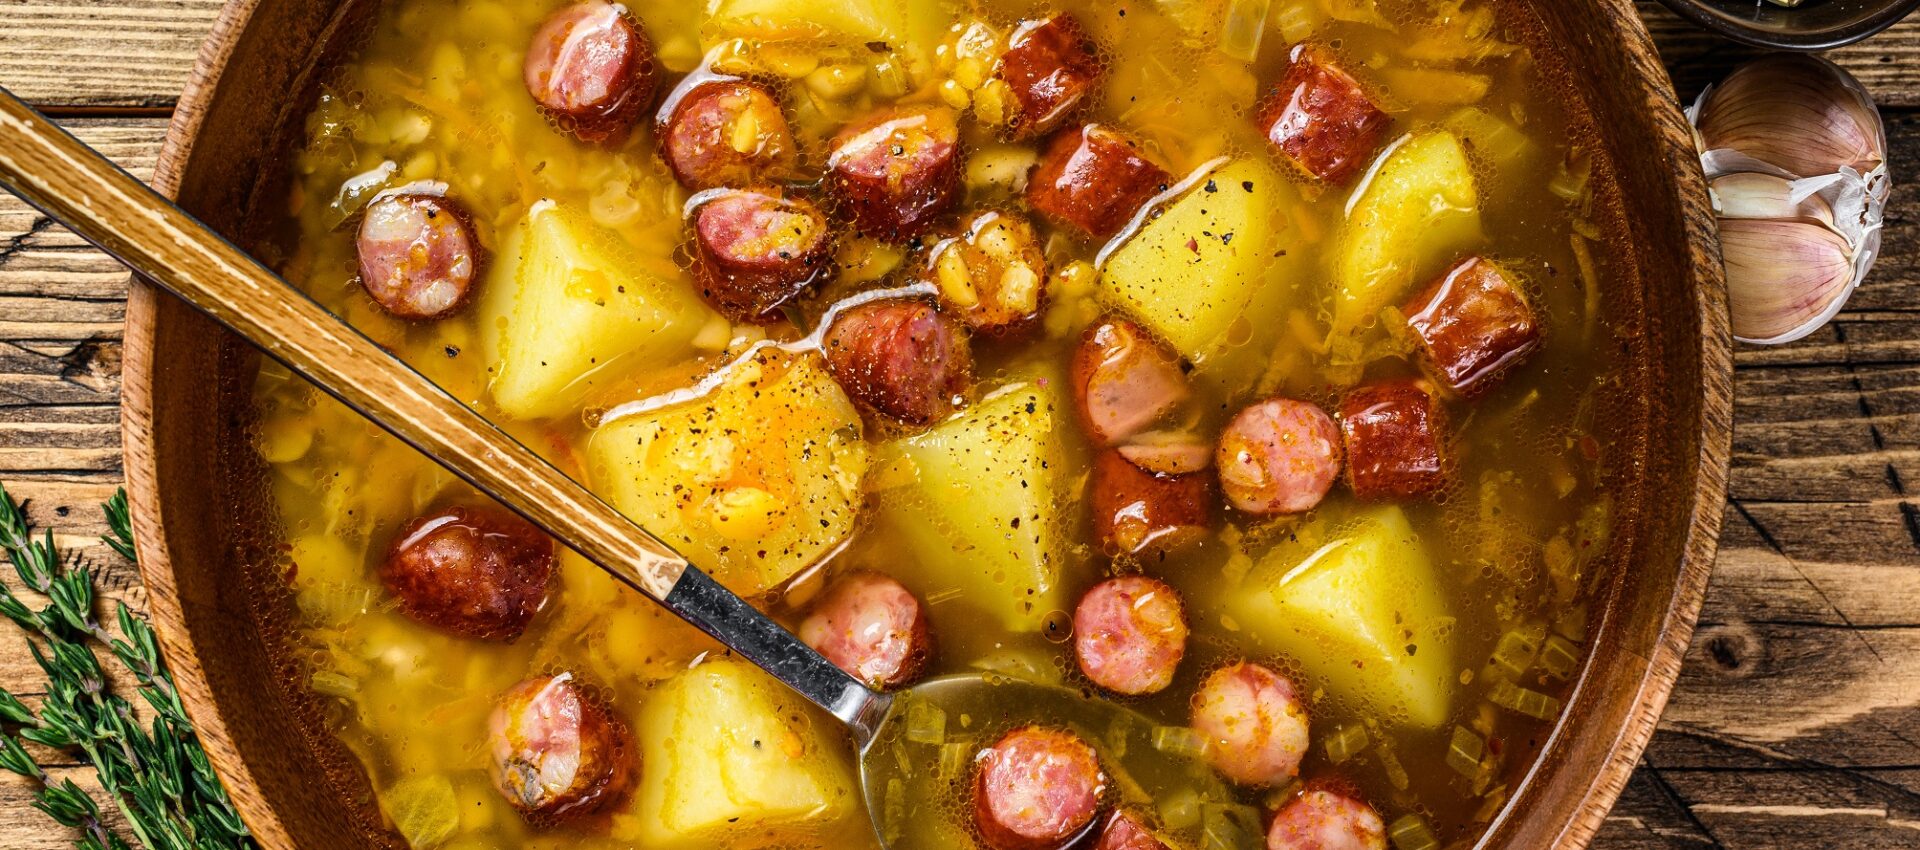 Soupe aux pois cassés avec saucisses fumées et pommes de terre